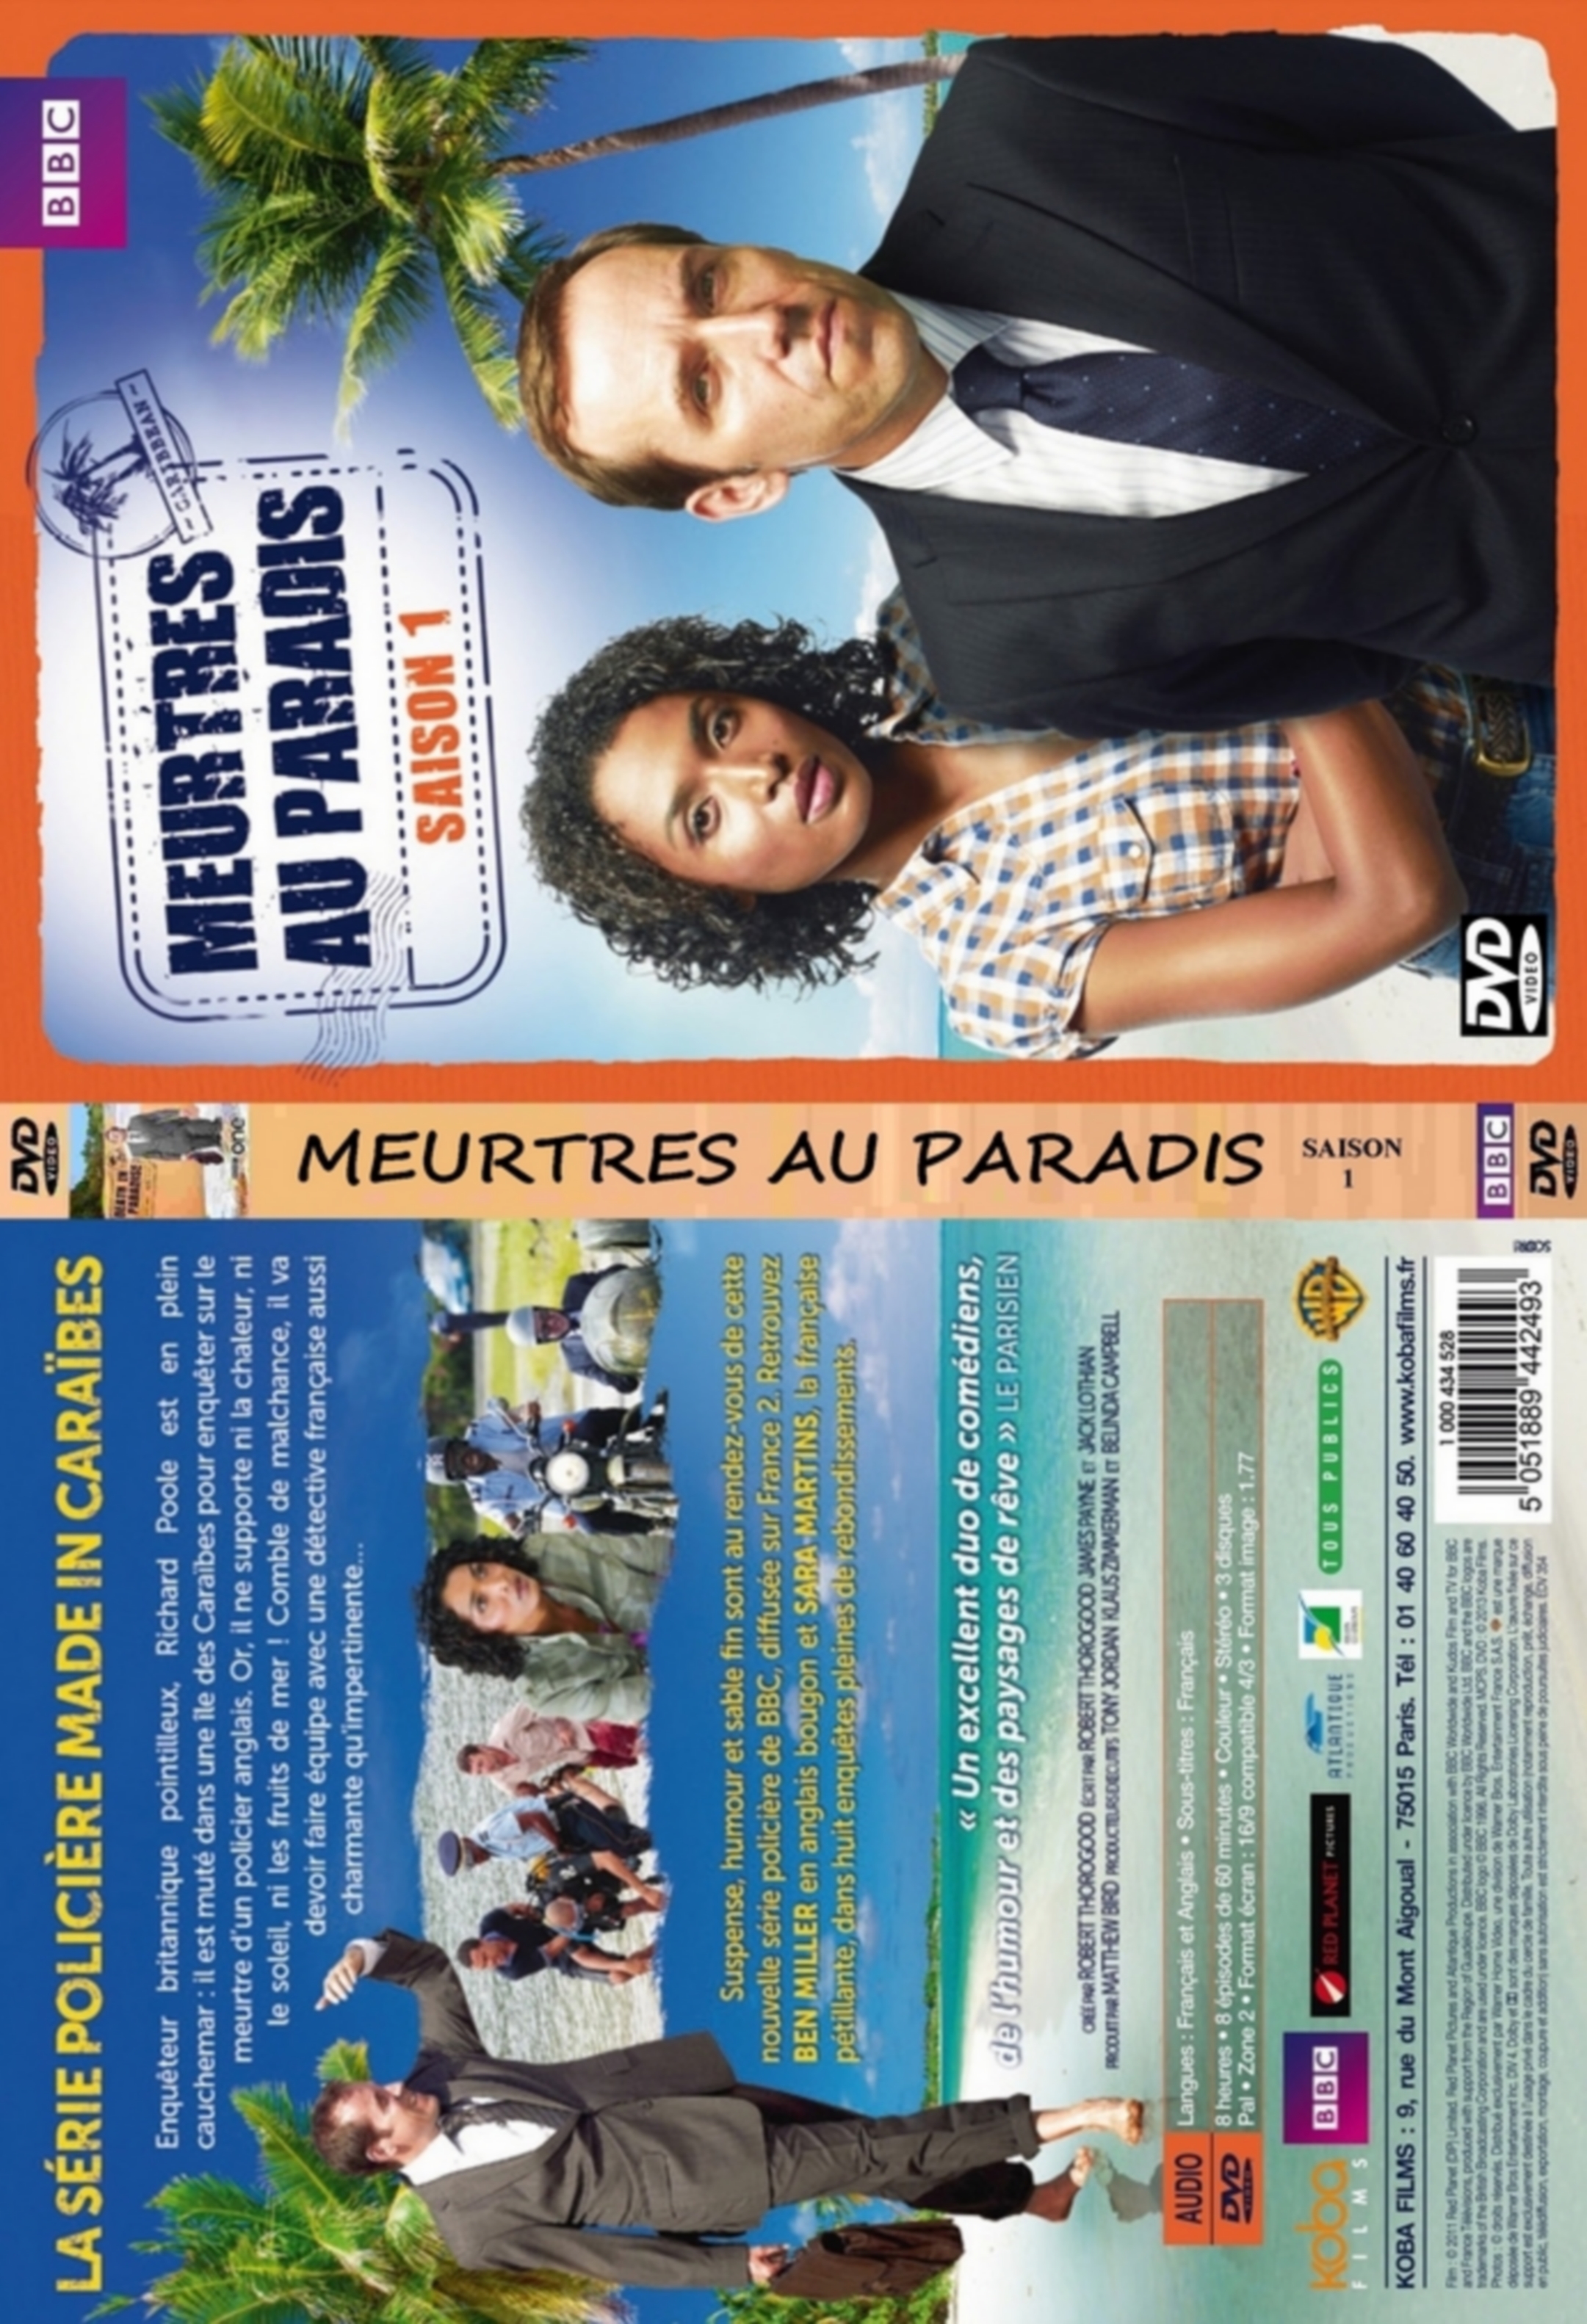 Jaquette DVD Meurtres au Paradis saison 1 custom